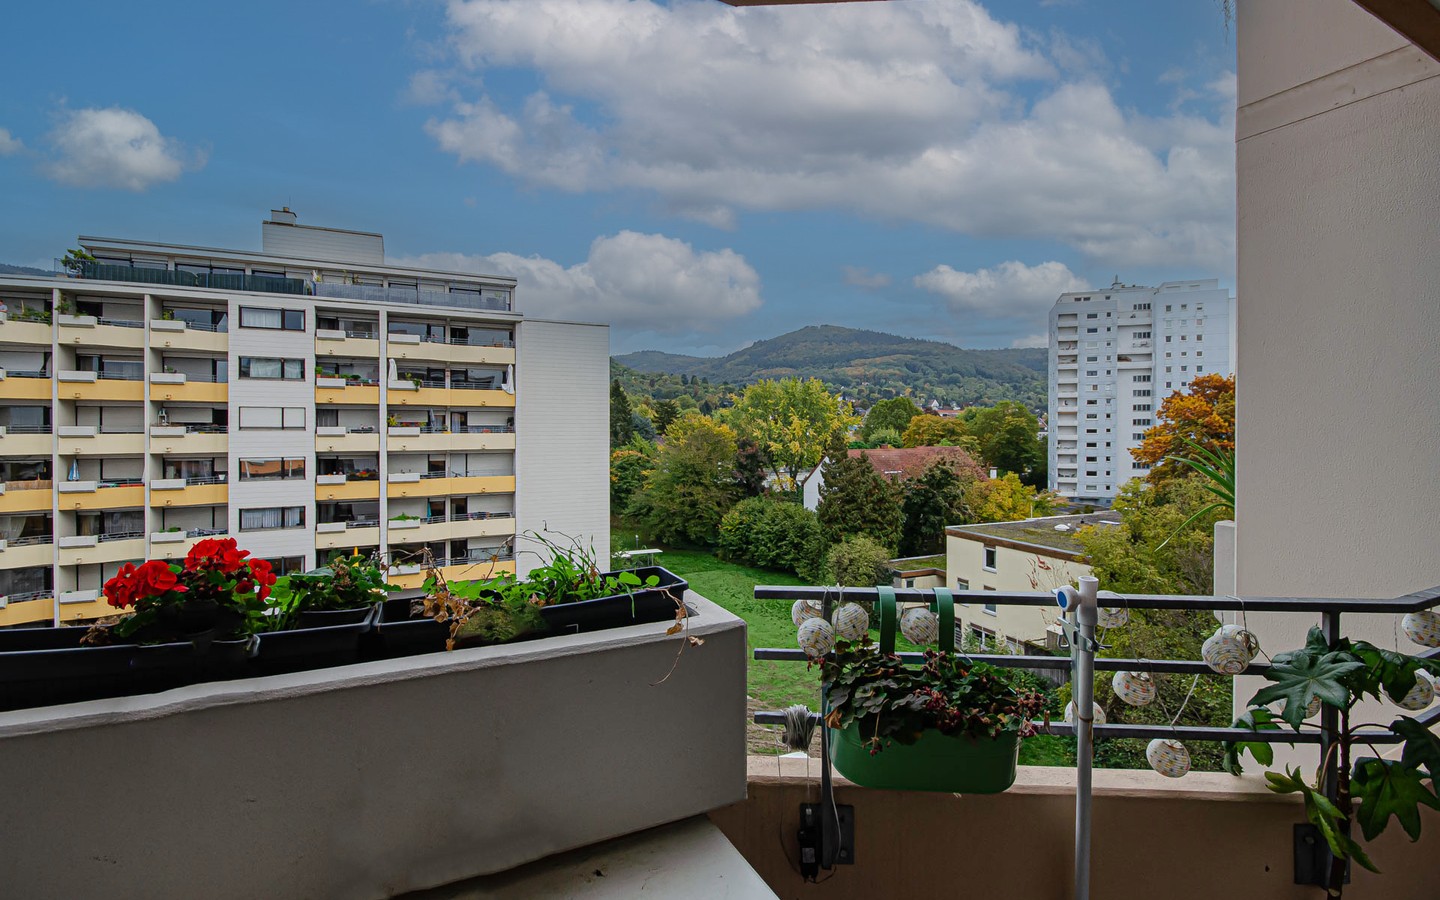 Balkon - Frei werdendes Einzimmerappartement: Attraktive Kapitalanlage oder ideal zum Eigennutz.